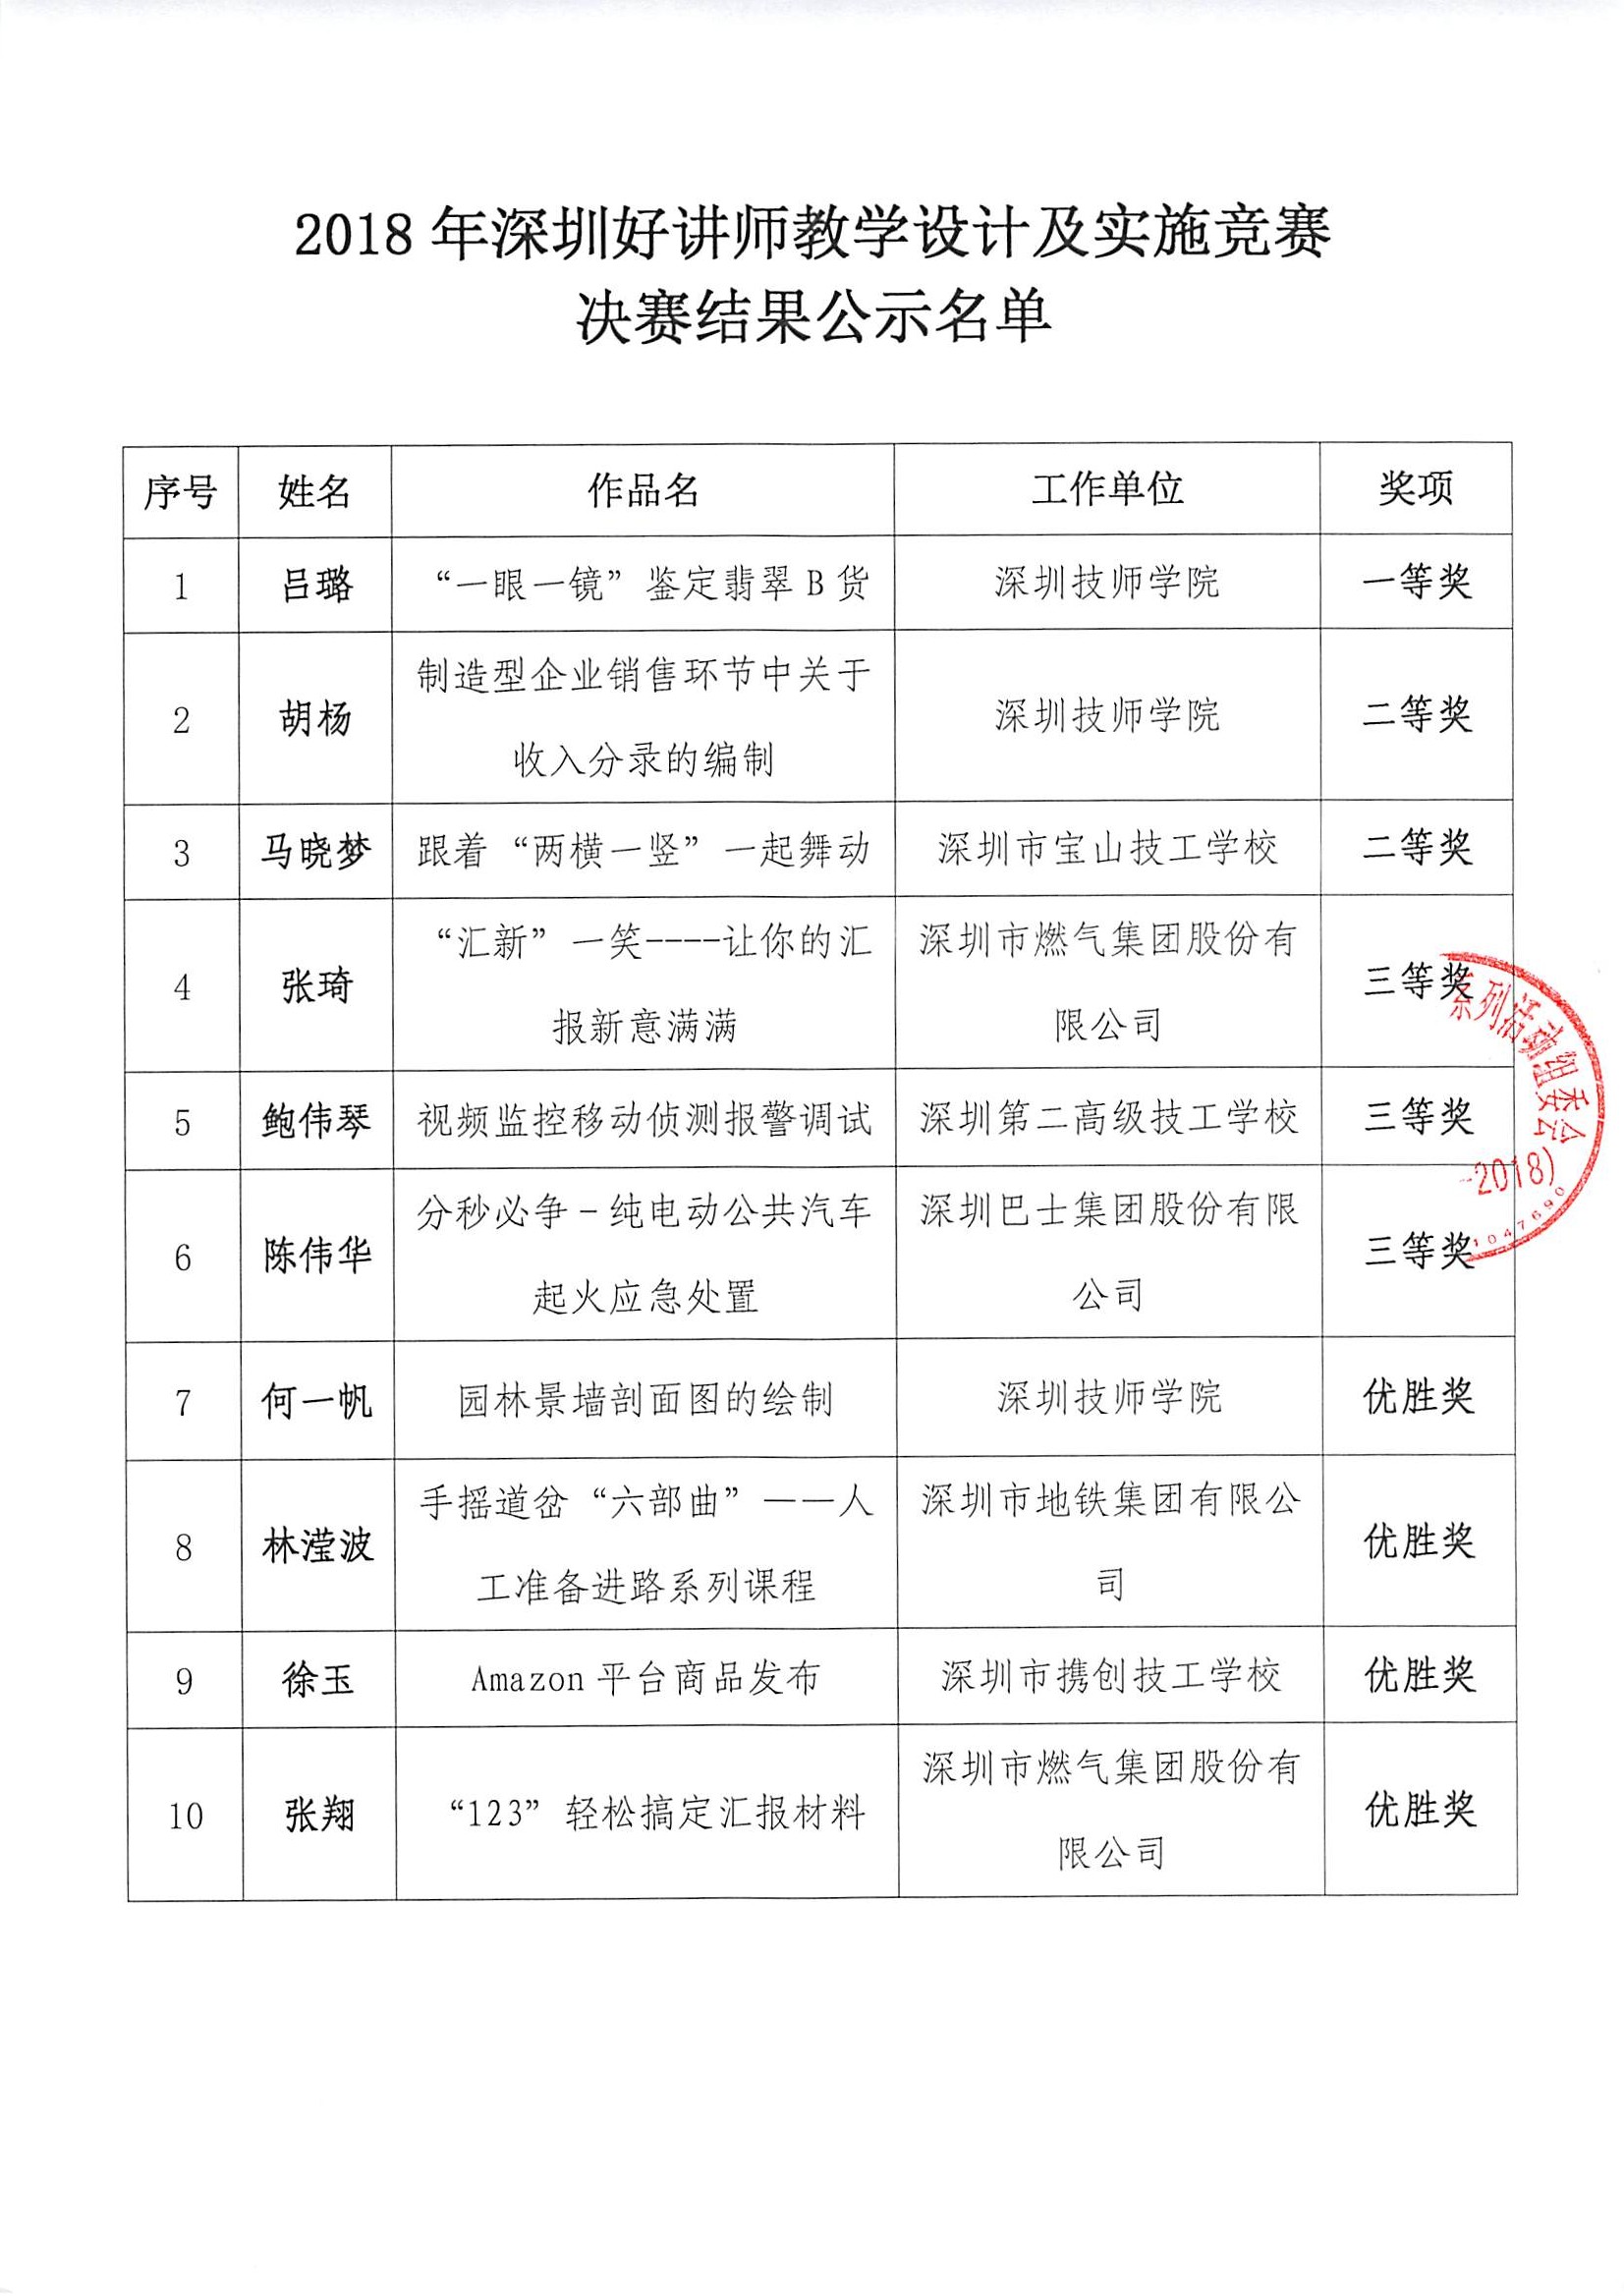 关于2018年深圳好讲师教学设计及实施竞赛决赛结果公示的公告2.jpg